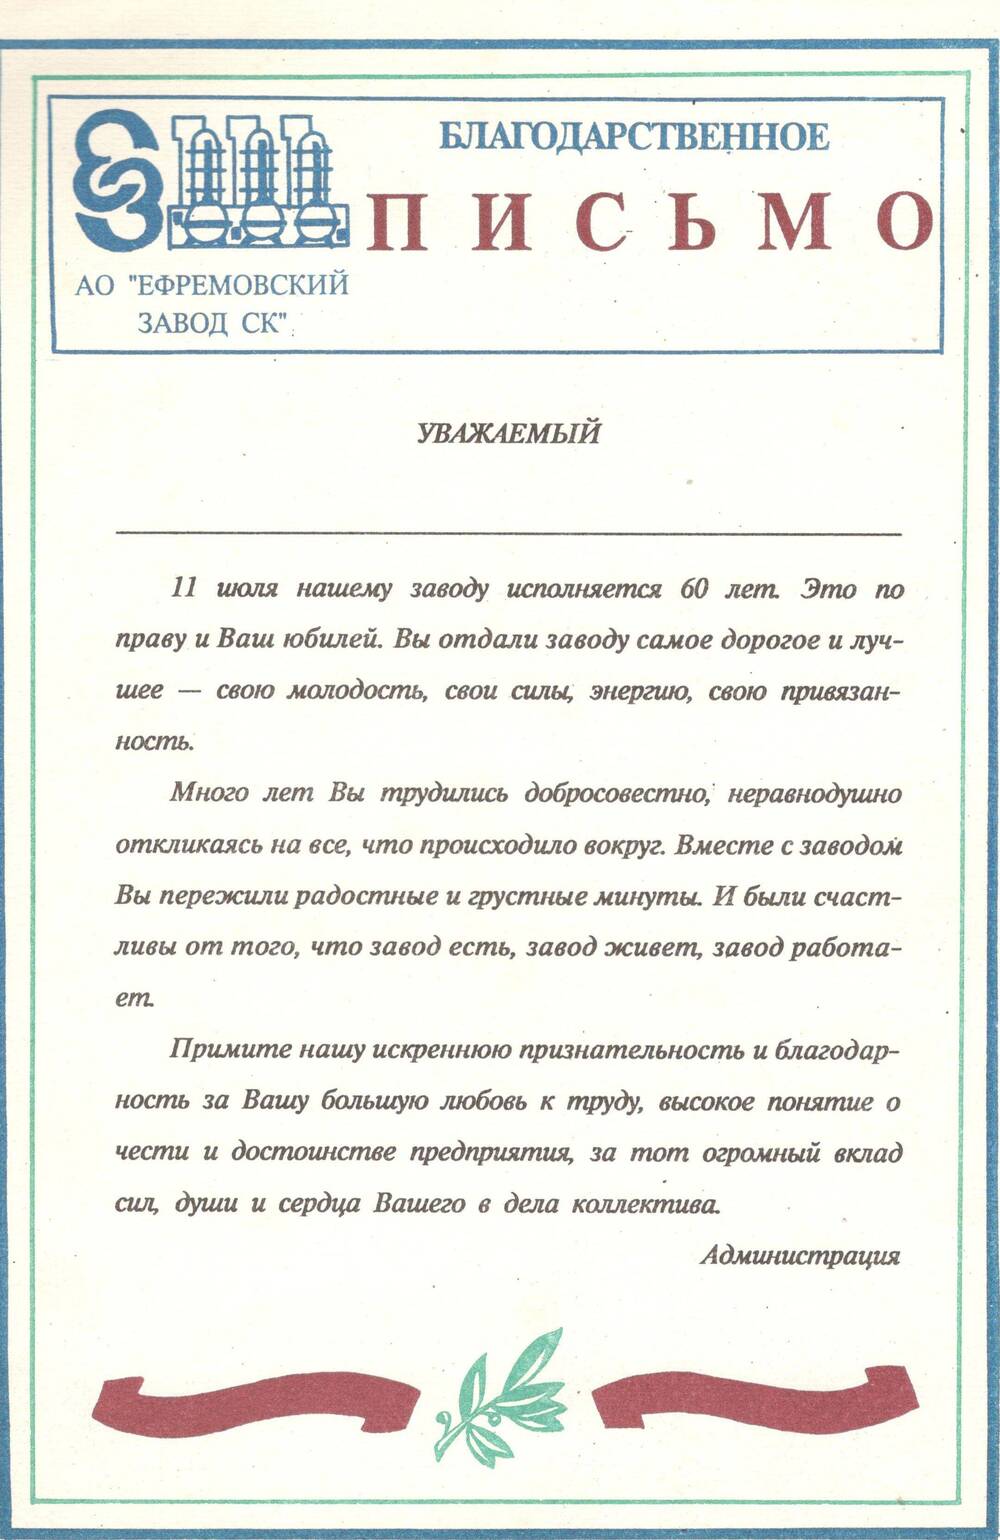 Благодарственное письмо от А0 « Ефремовский завод СК» в честь 60-летия завода